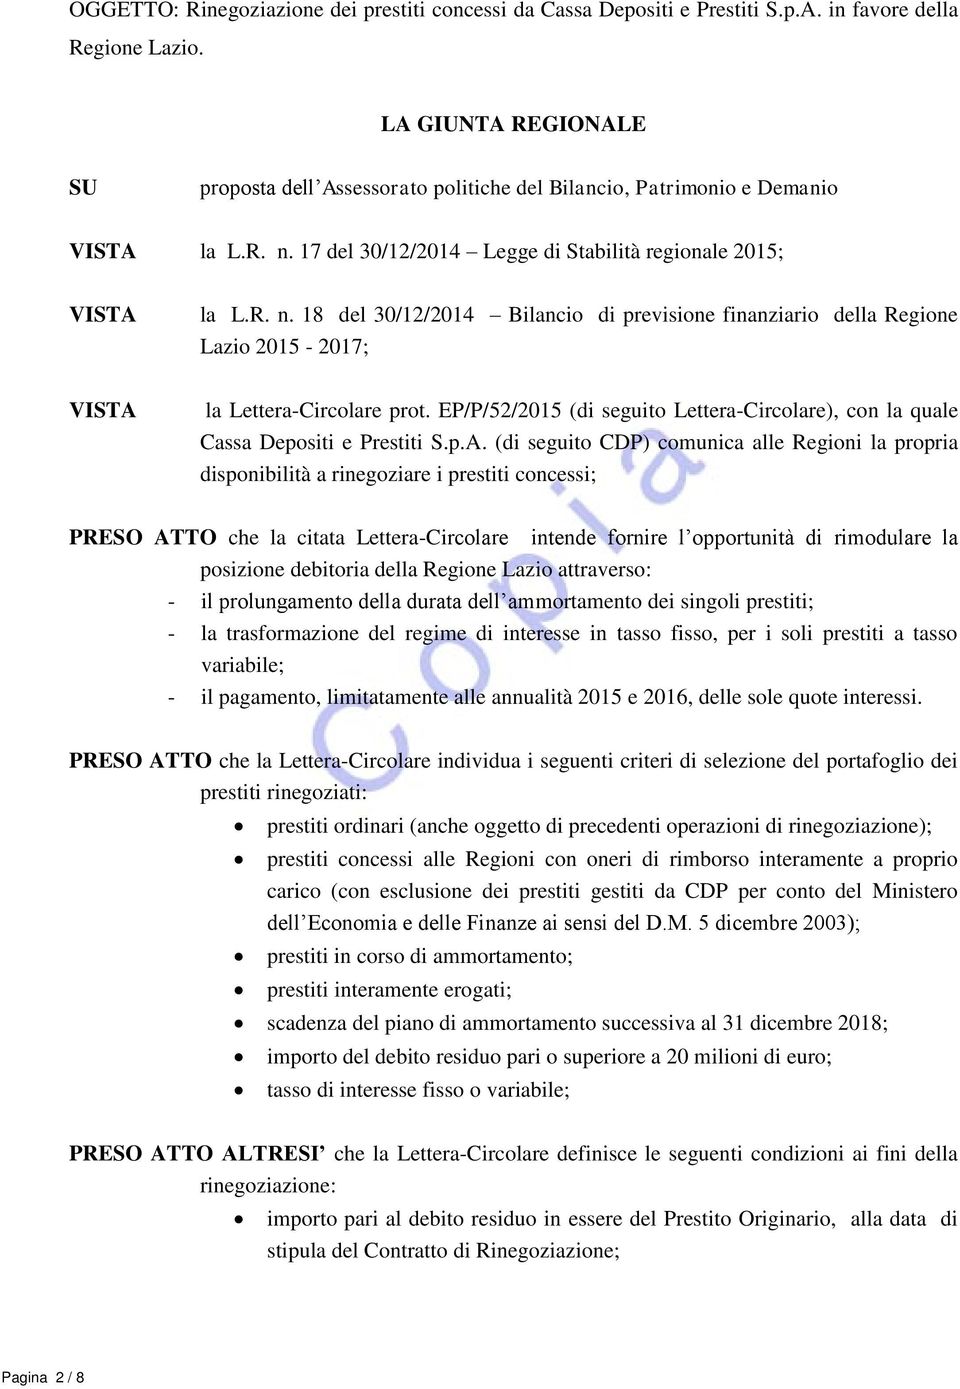 17 del 30/12/2014 Legge di Stabilità regionale 2015; VISTA la L.R. n. 18 del 30/12/2014 Bilancio di previsione finanziario della Regione Lazio 2015-2017; VISTA la Lettera-Circolare prot.